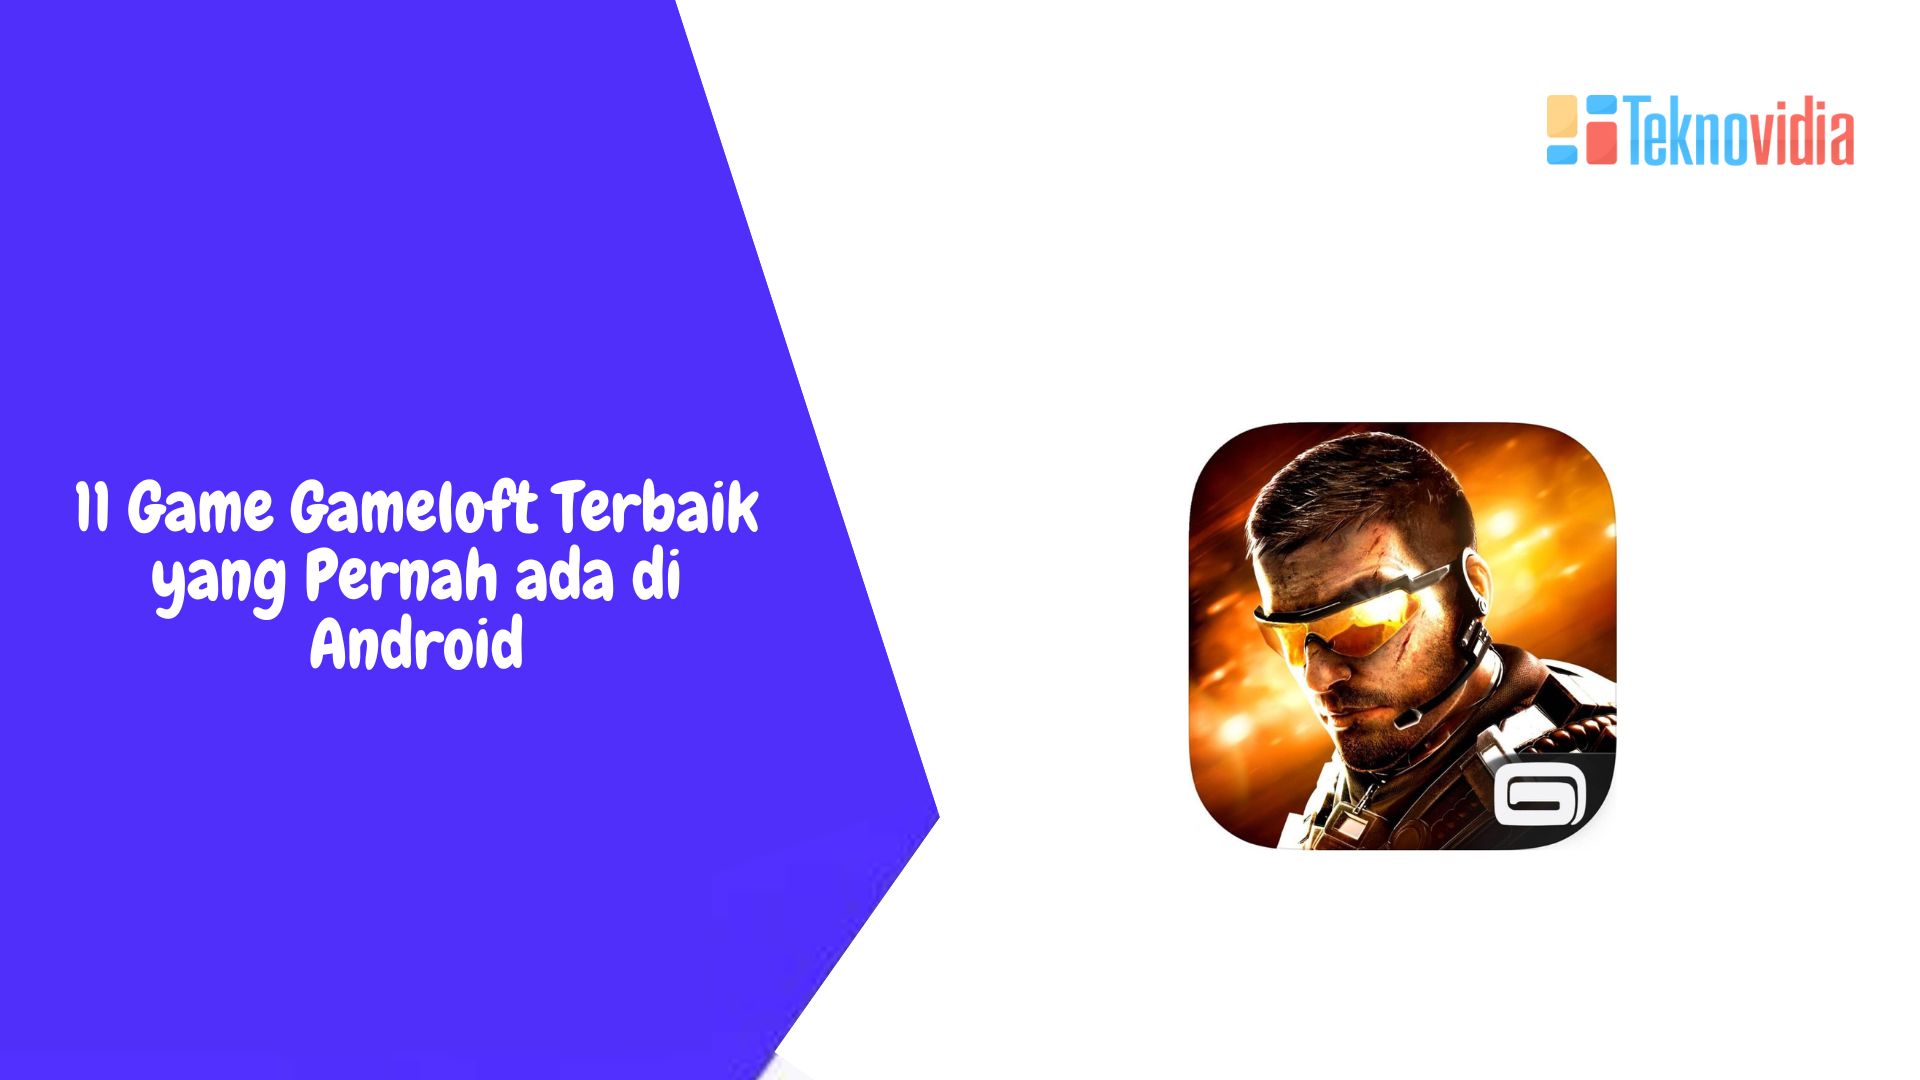 11 Game Gameloft Terbaik yang Pernah ada di Android